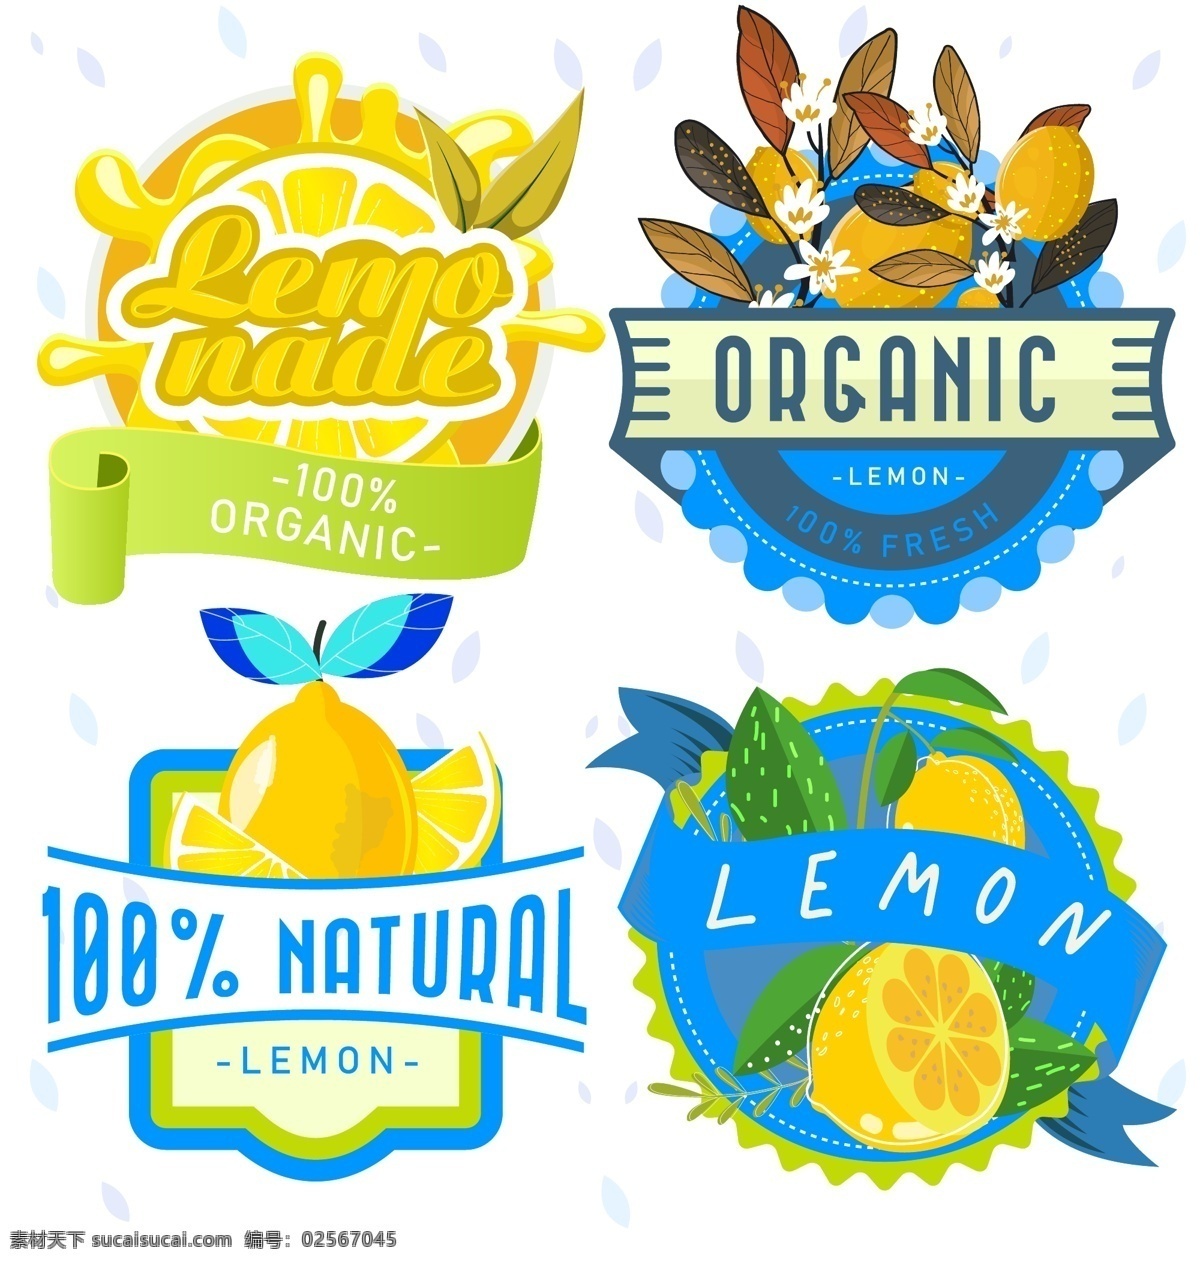 柠檬图标 柠檬标签 柠檬水果 柠檬元素 柠檬素材 水果便签 水果标签 水果图标 食物 生物世界 水果